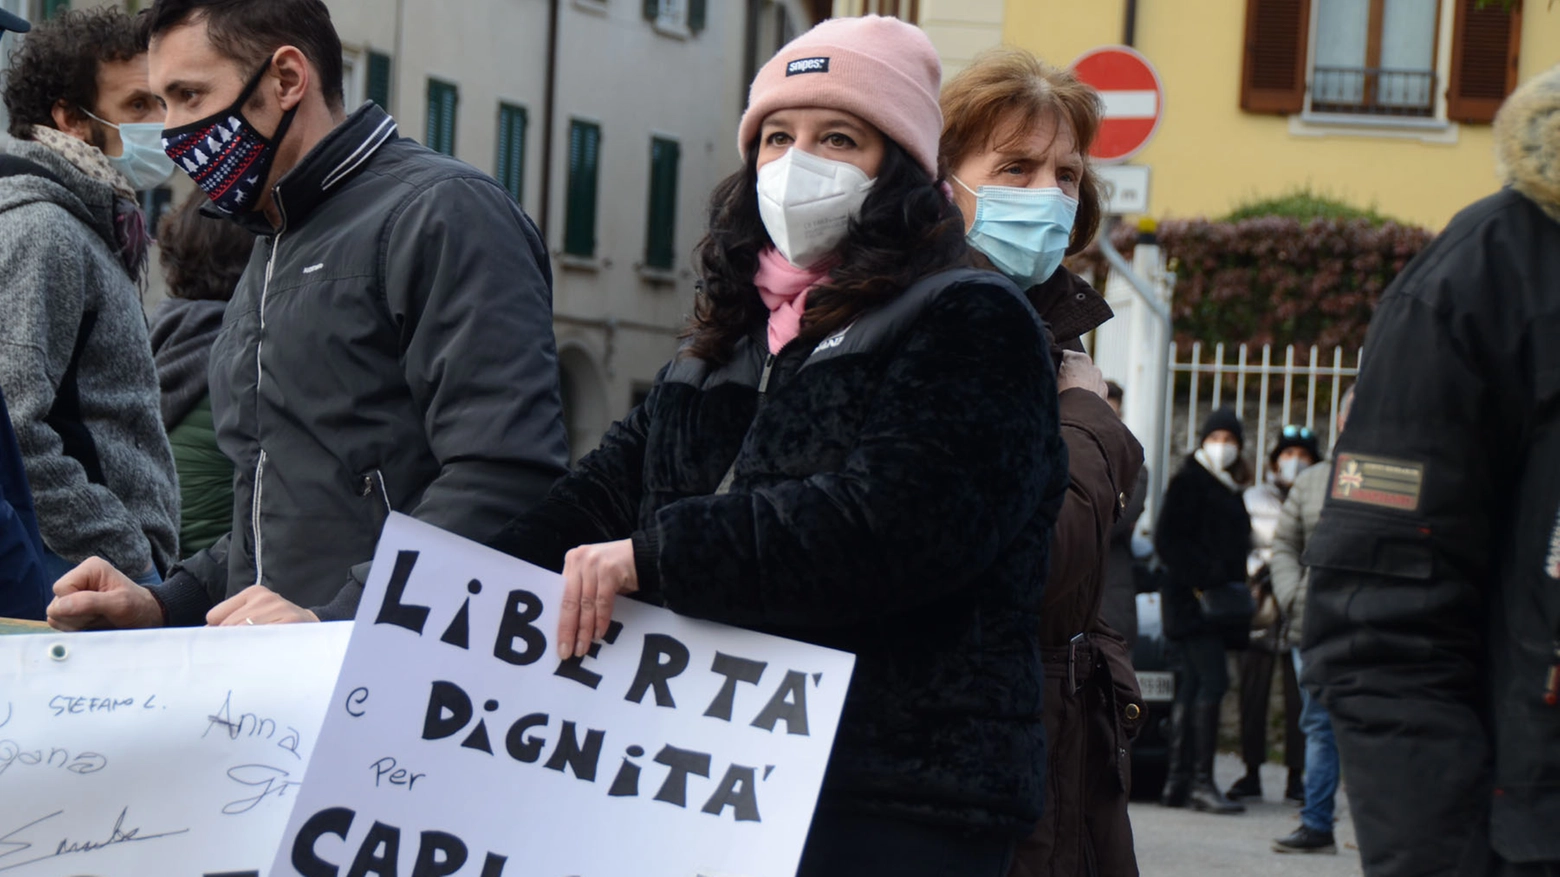 La manifestazione a sostegno di Carlo Gilardi fuori dall'Airoldi&Muzzi